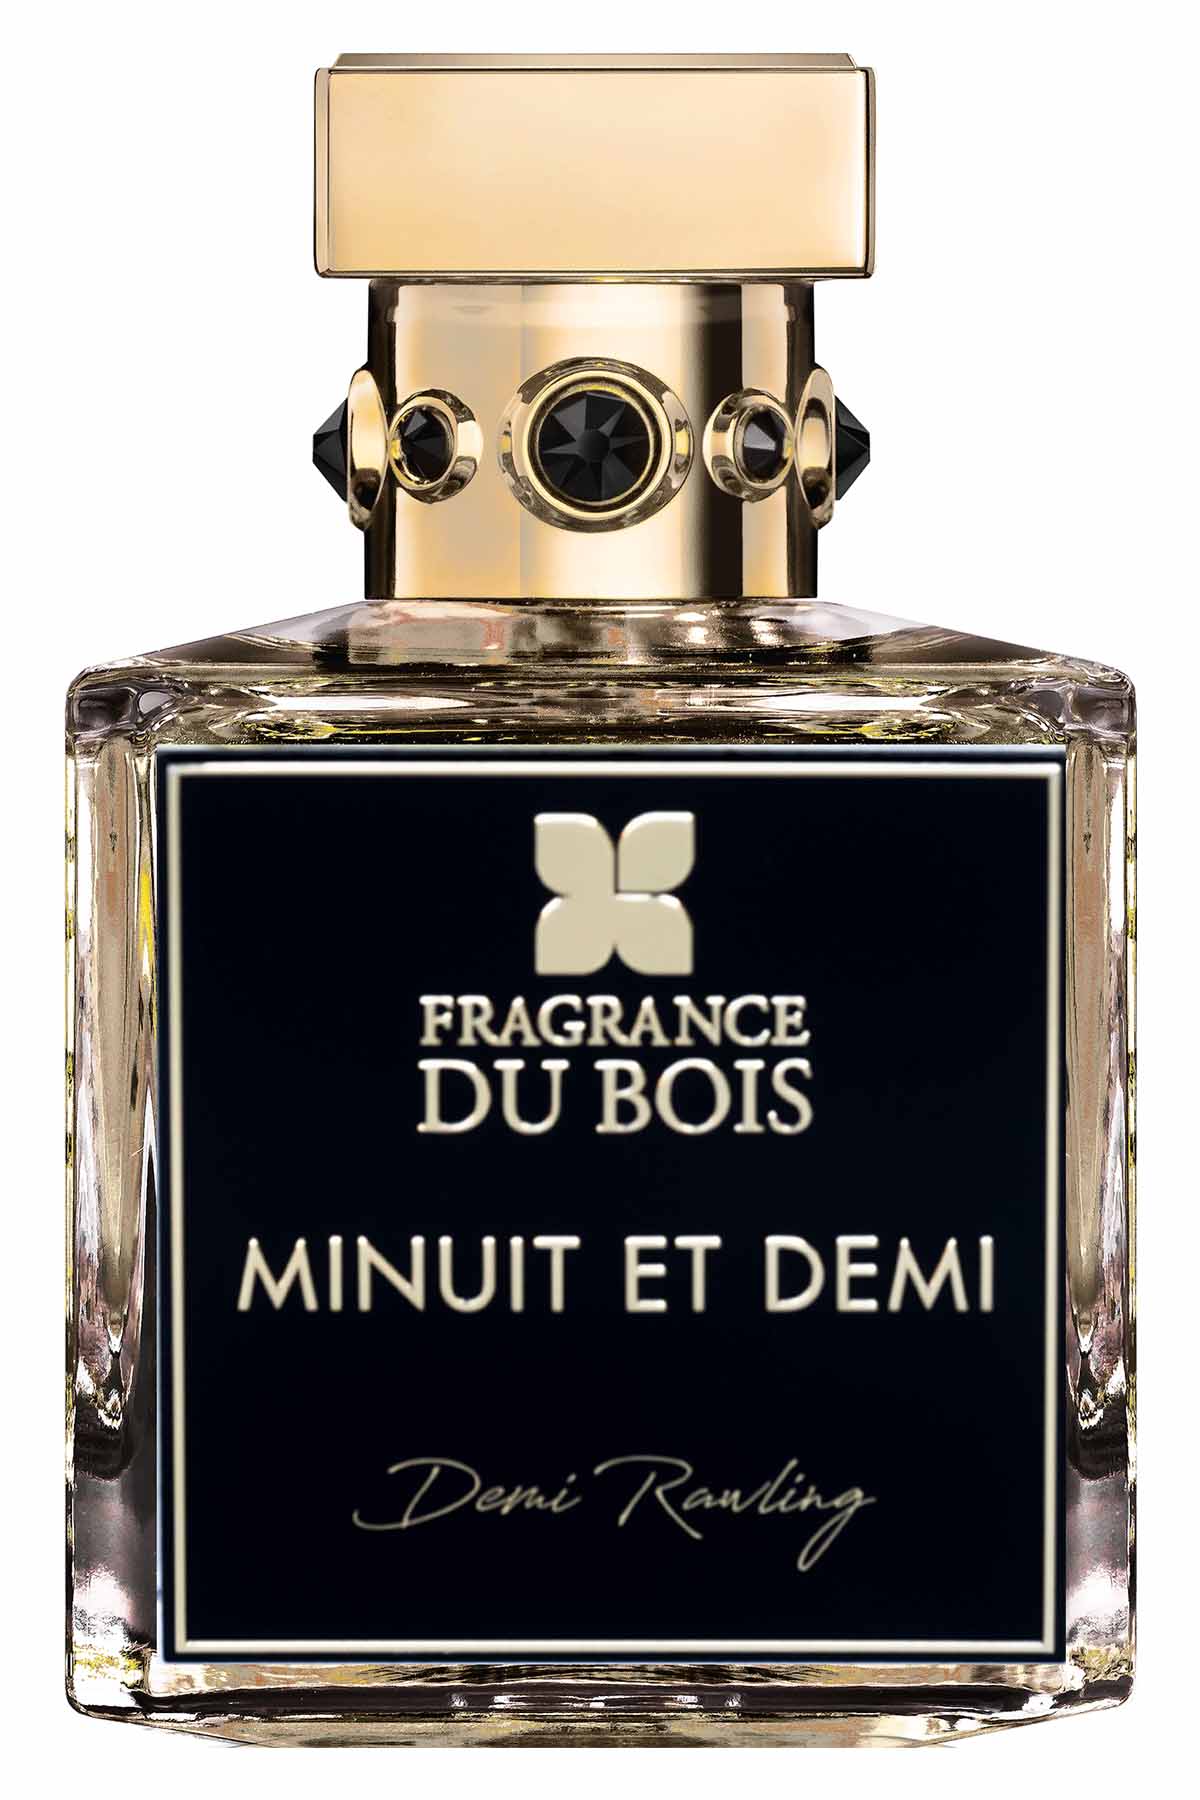 Fragrance Du Bois Minuit et Demi Parfum